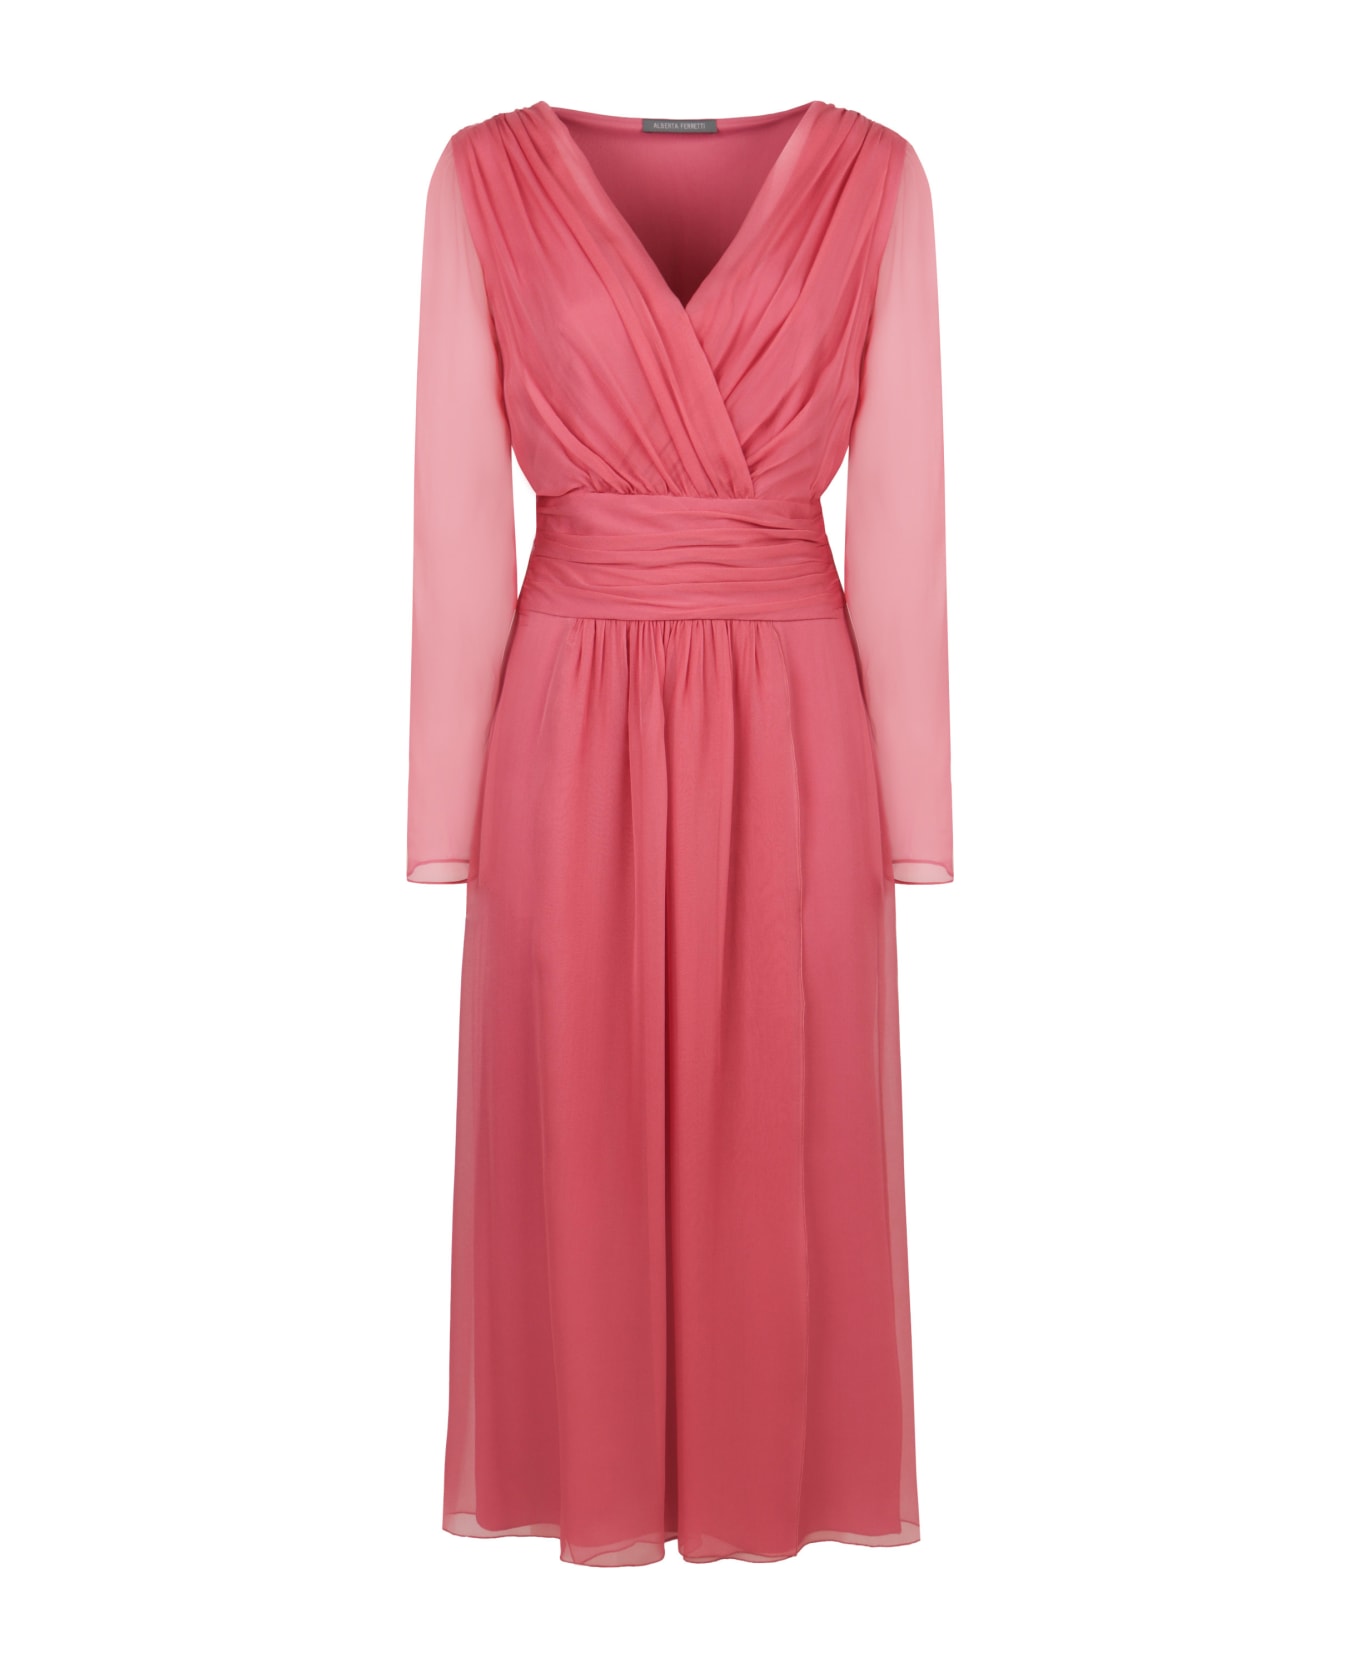 Alberta Ferretti Chiffon Dress - Pink